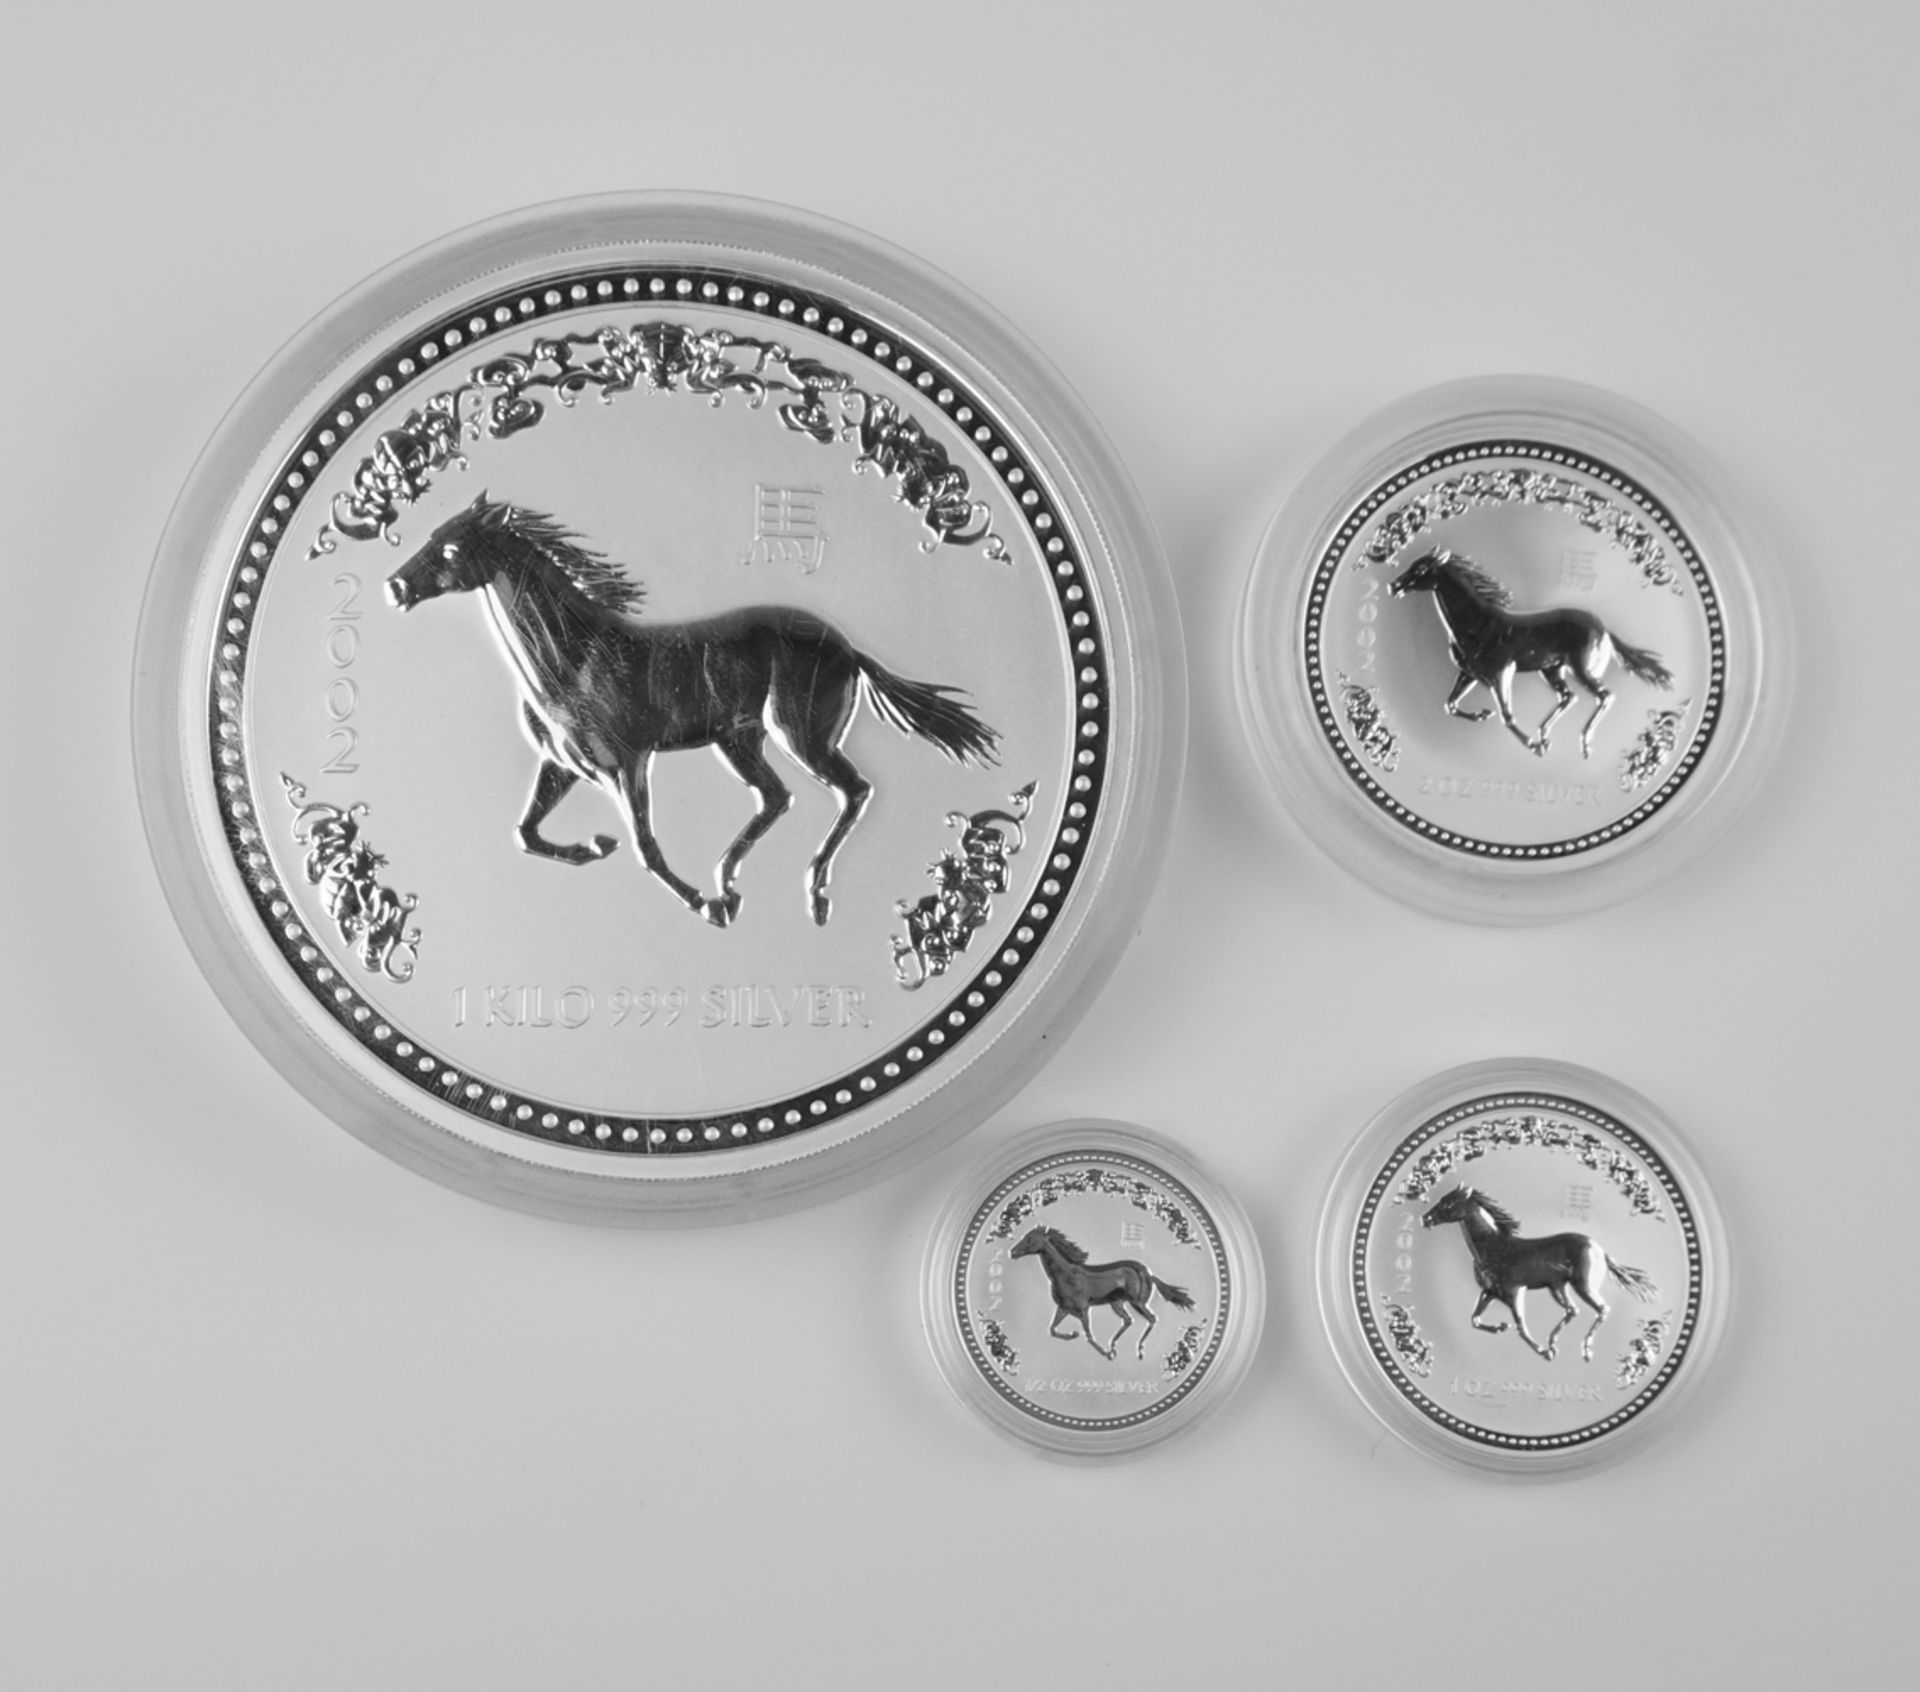 4-tlg. Silbermünzen-Serie, Luna I, Jahr des Pferdes, 2002, Australien